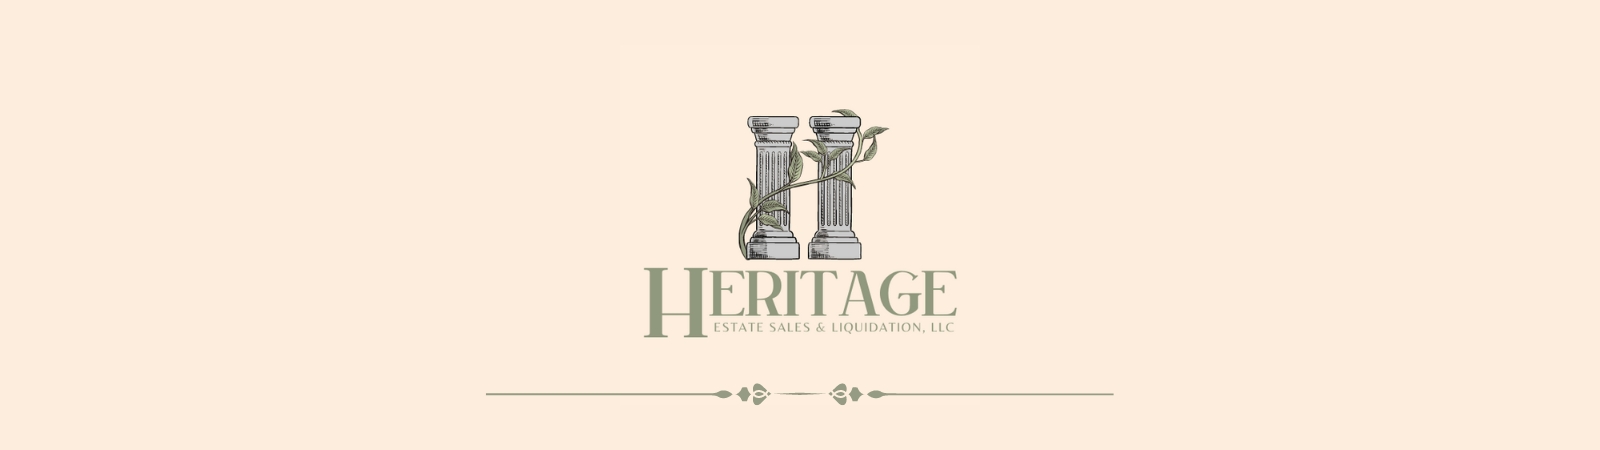 Heritage Estate Sales and Liquidation, LLC | AuctionNinja